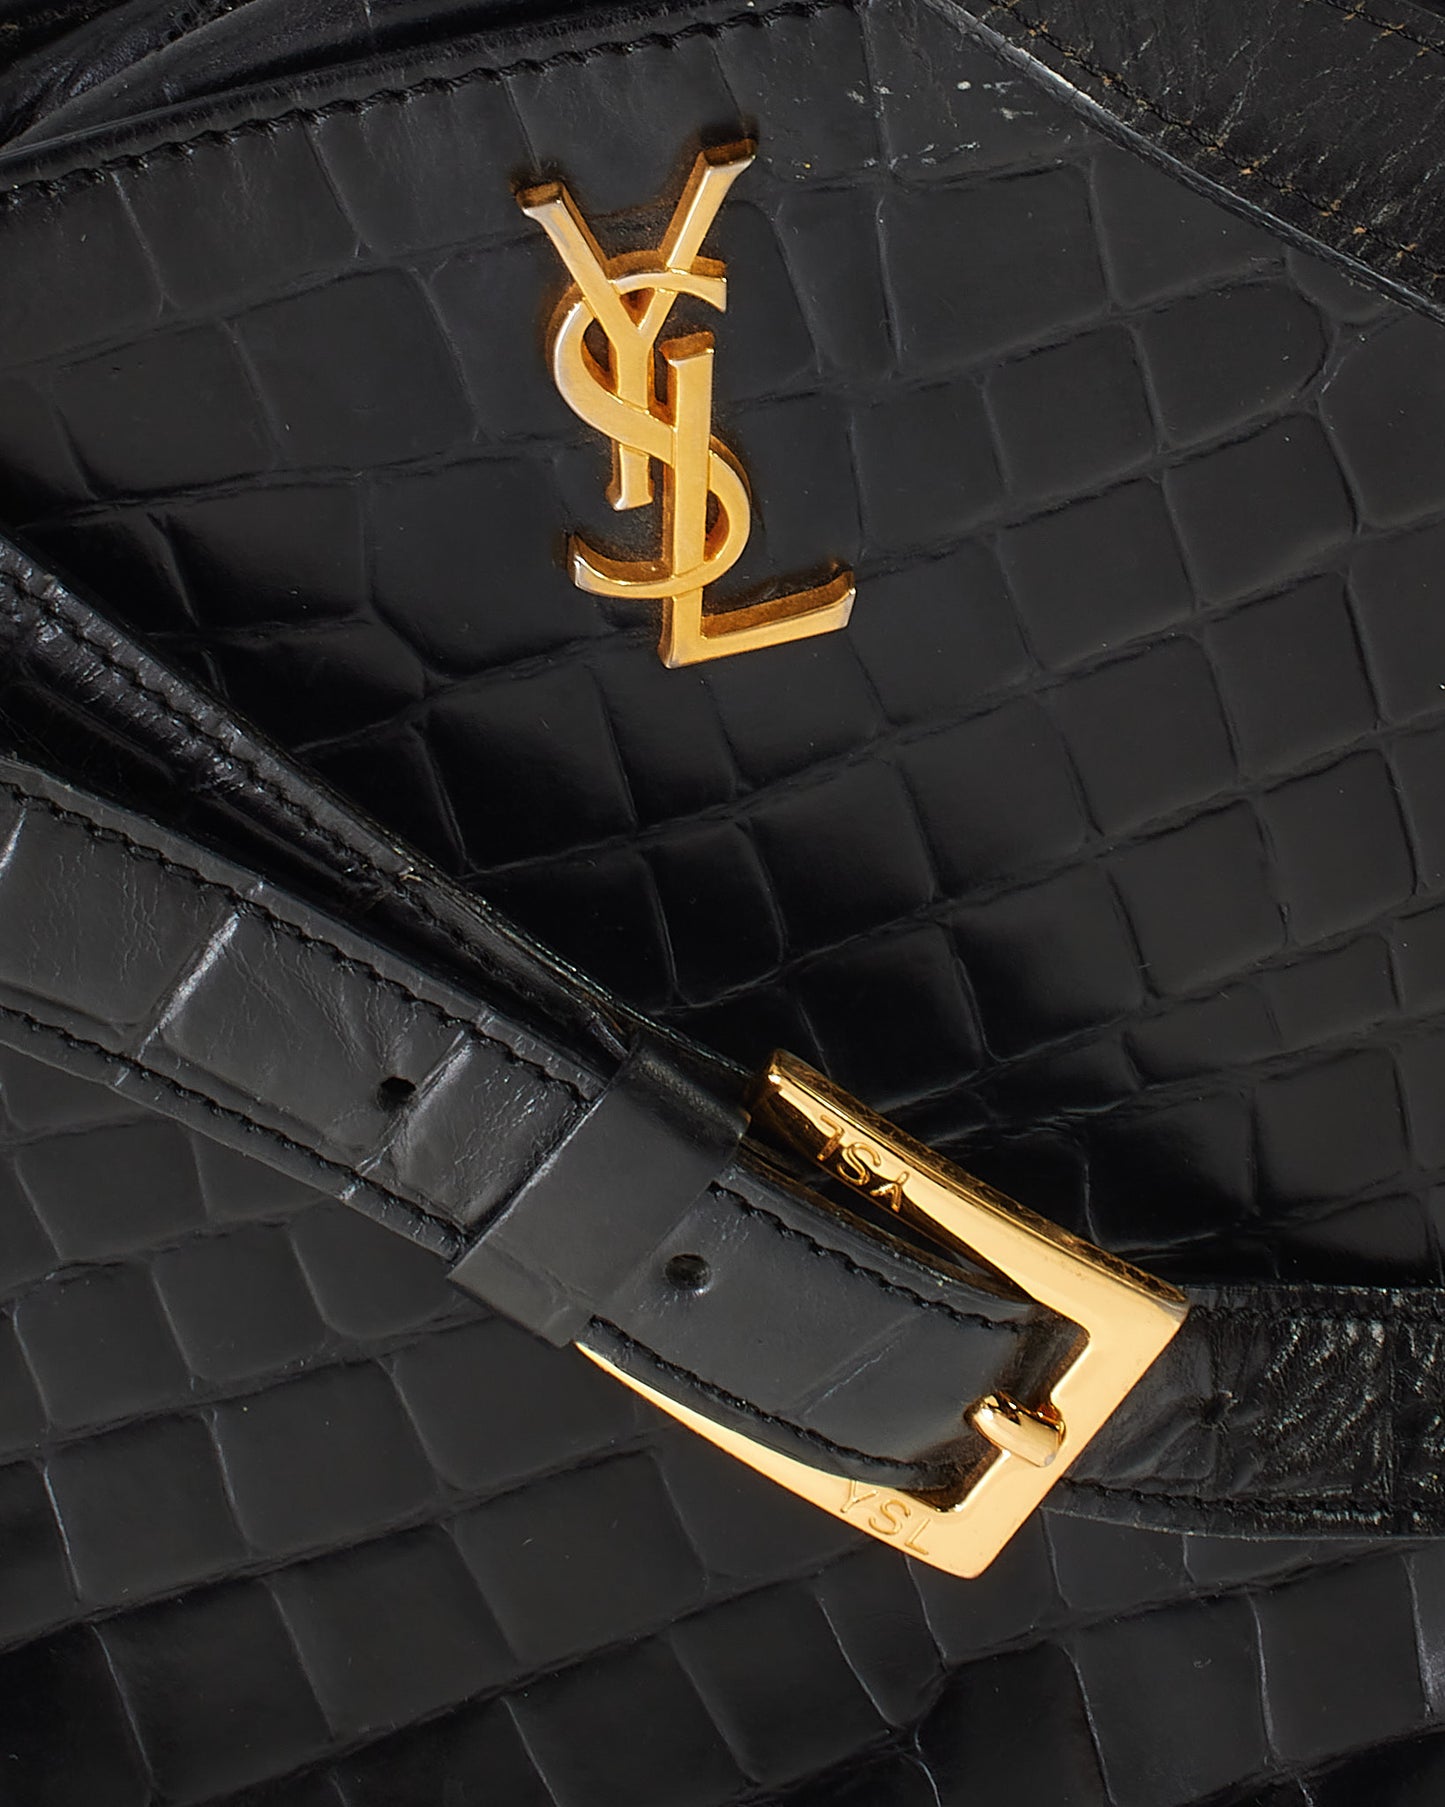 Saint Laurent Black Leather Shoulder Bag